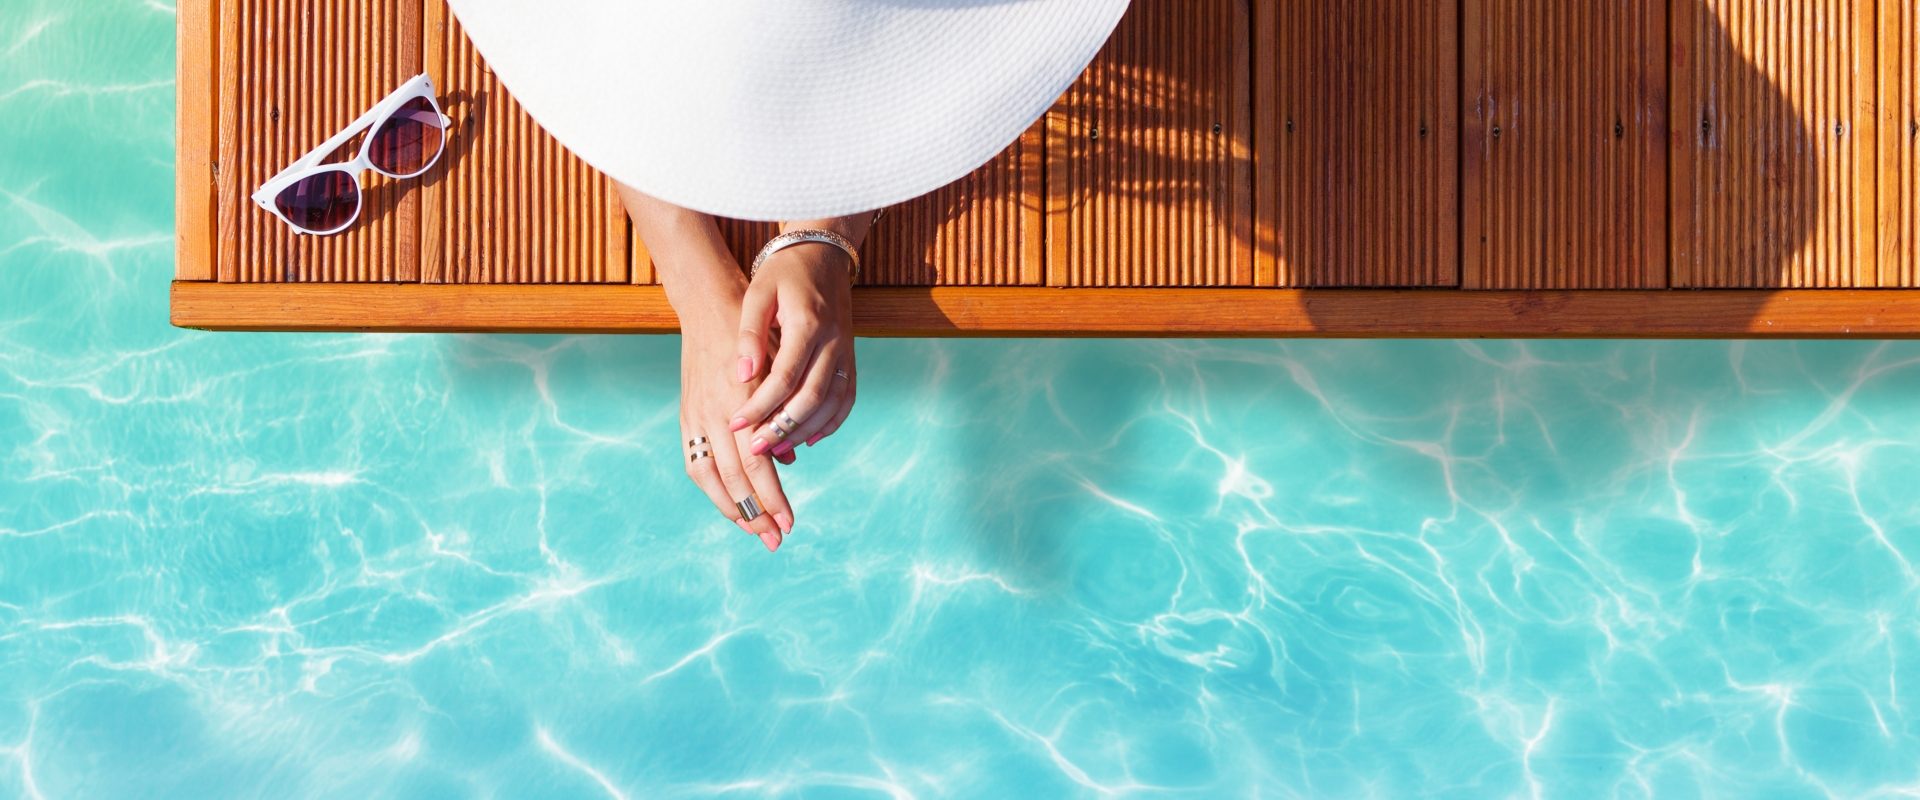 Jak się bezpiecznie opalać przy problemach z cerą? Kobieta wypoczywa w basenie, chroniąc się przed słońcem wielkim kapeluszem.